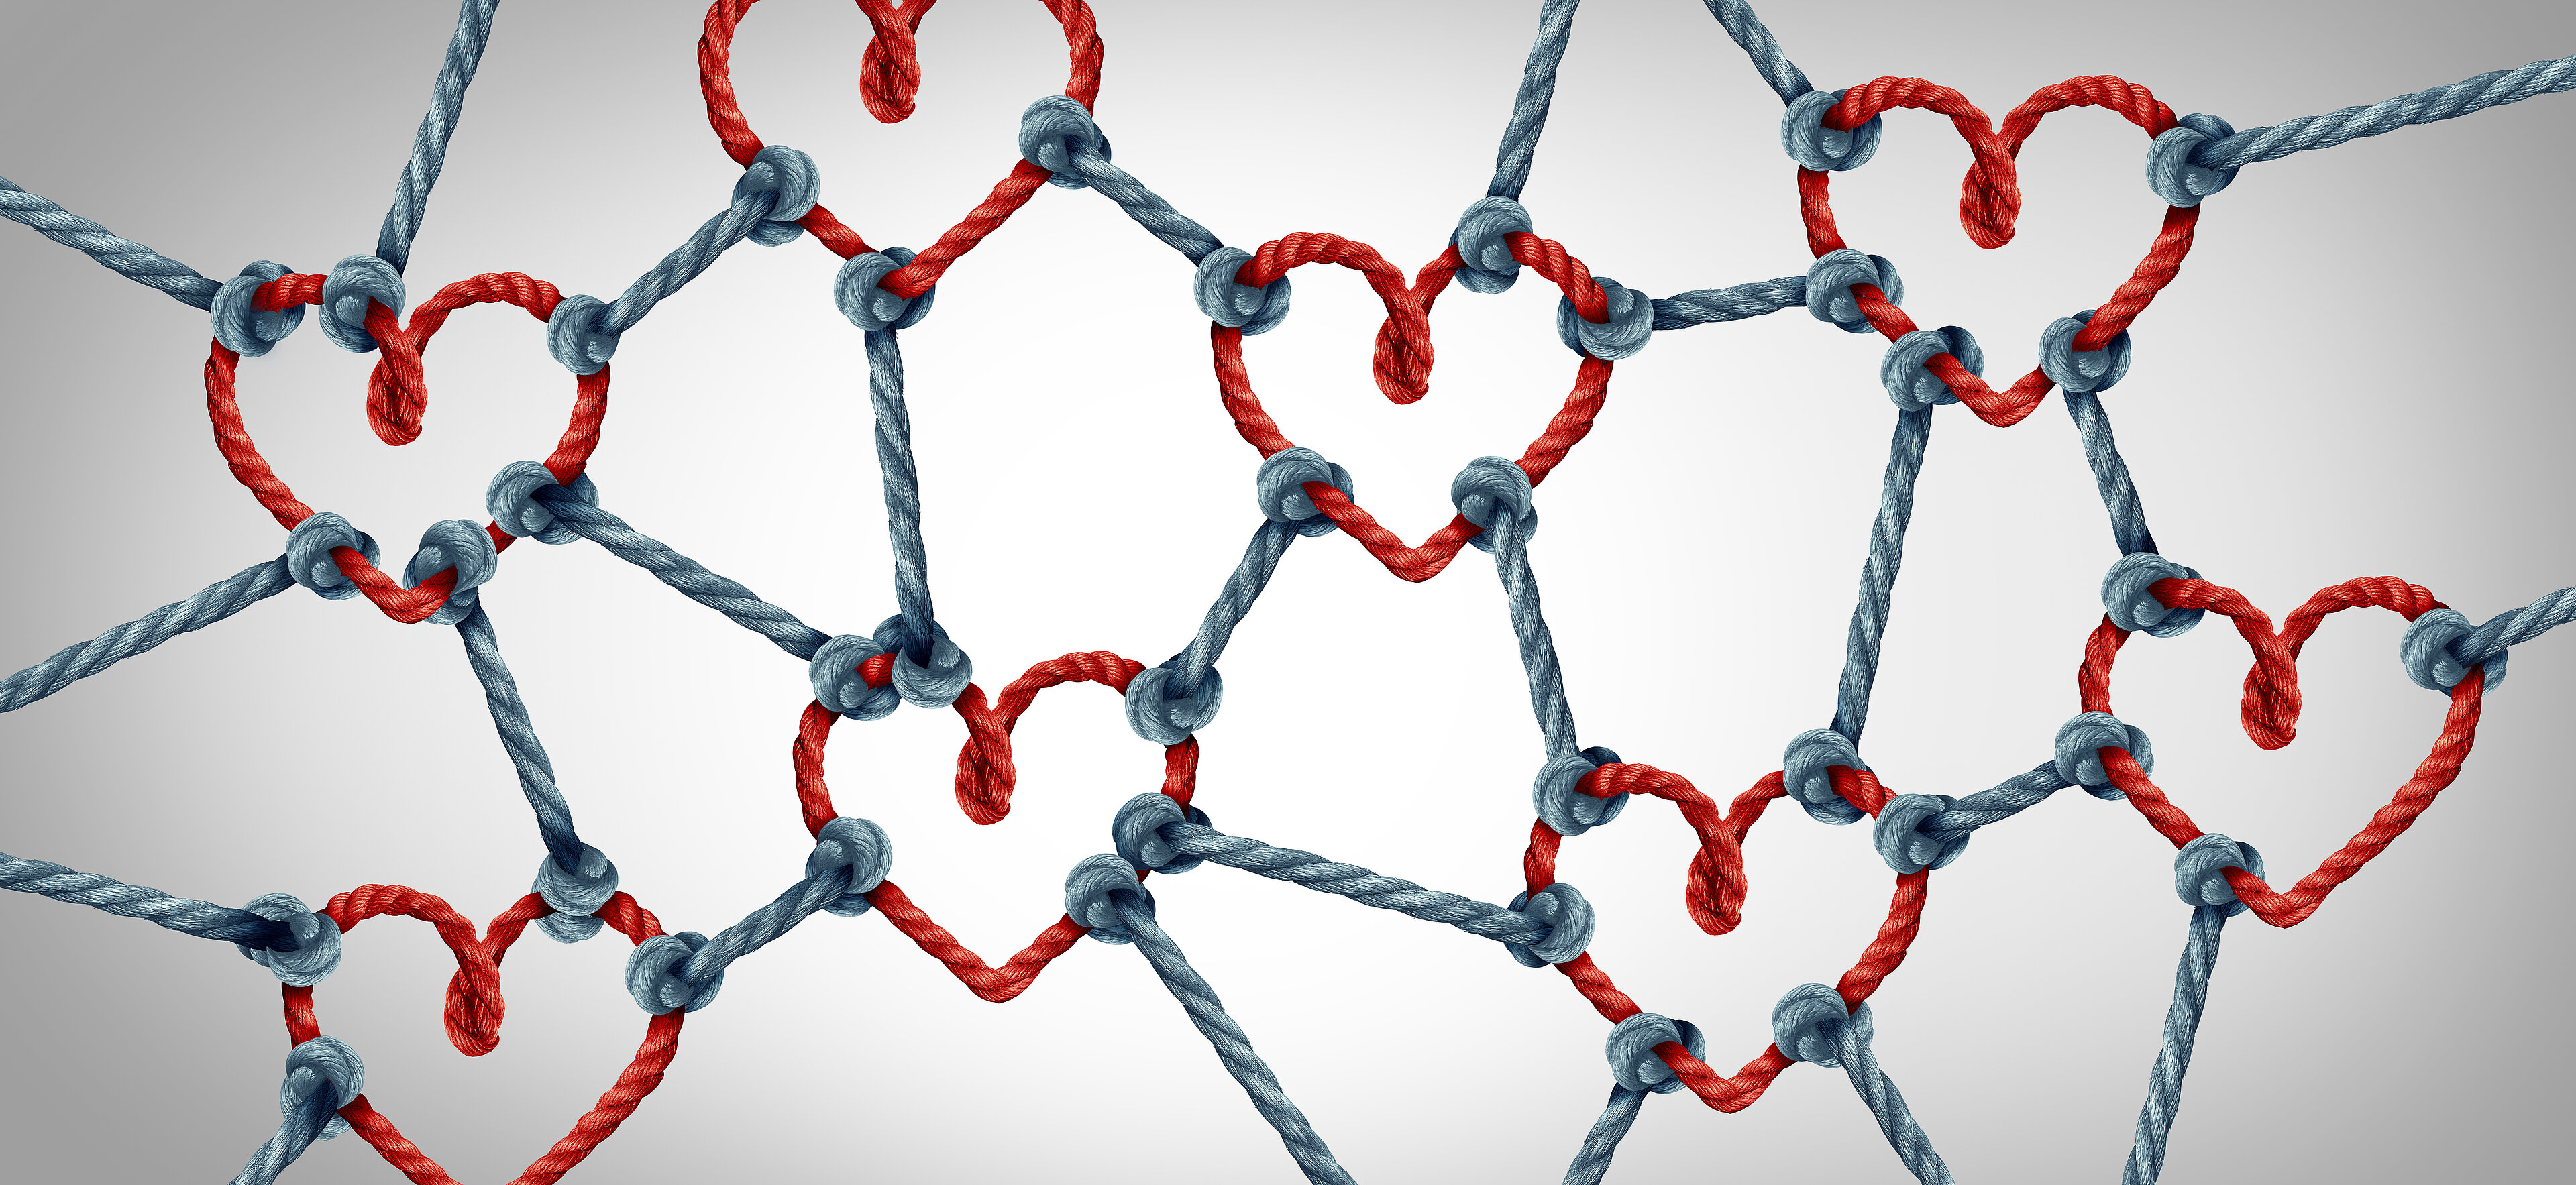 Blaue Seile verbinden rote Herzen miteinander als Zeichen des Zusammenhalts